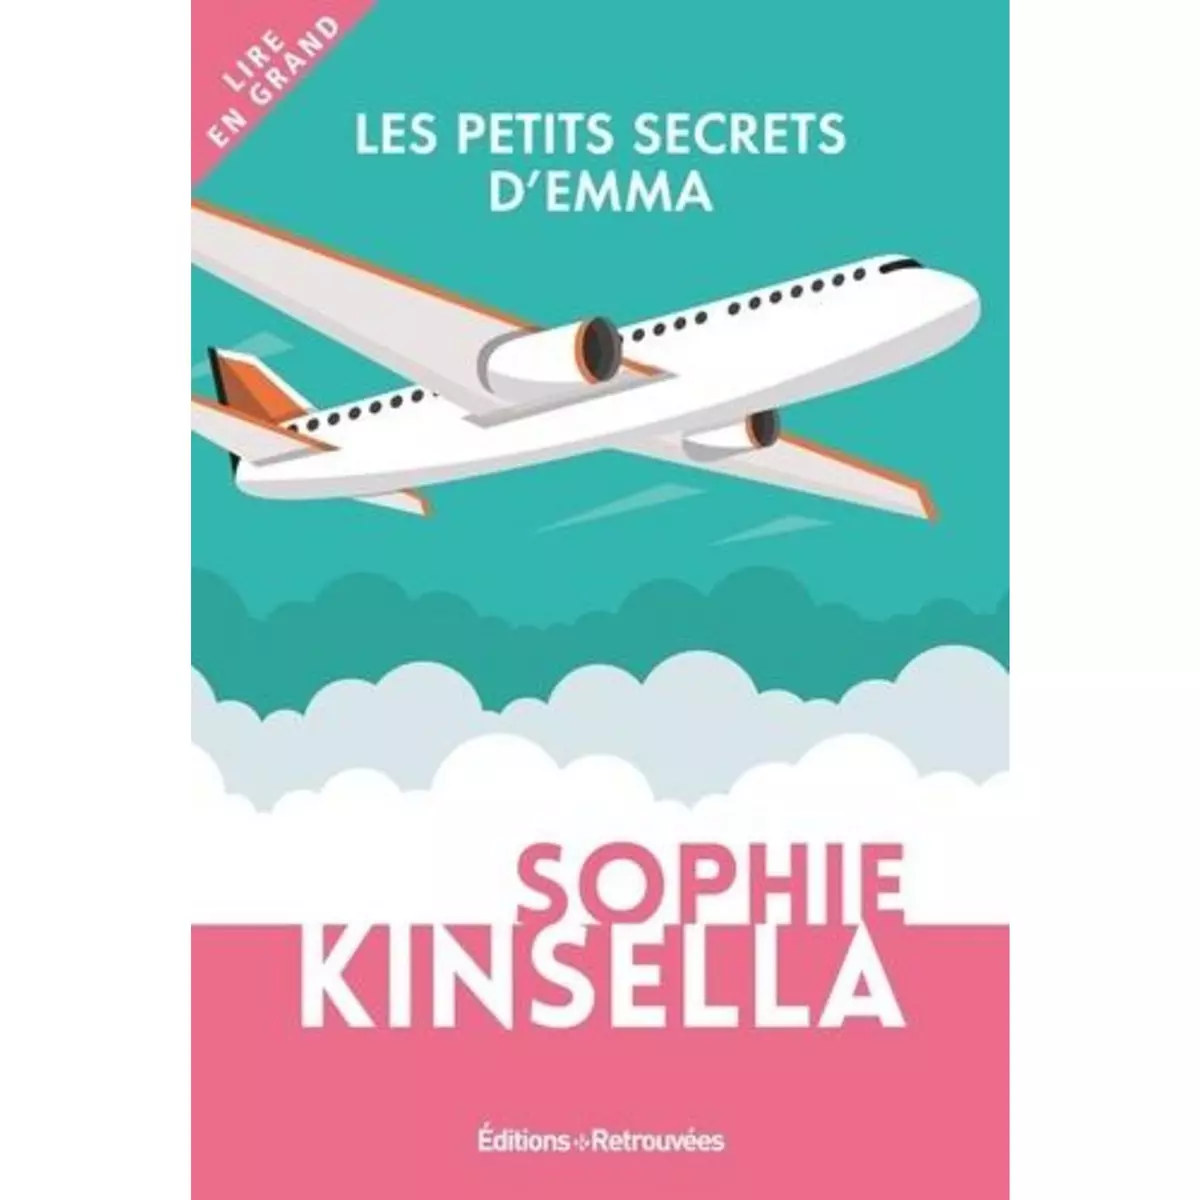  LES PETITS SECRETS D'EMMA [EDITION EN GROS CARACTERES], Kinsella Sophie